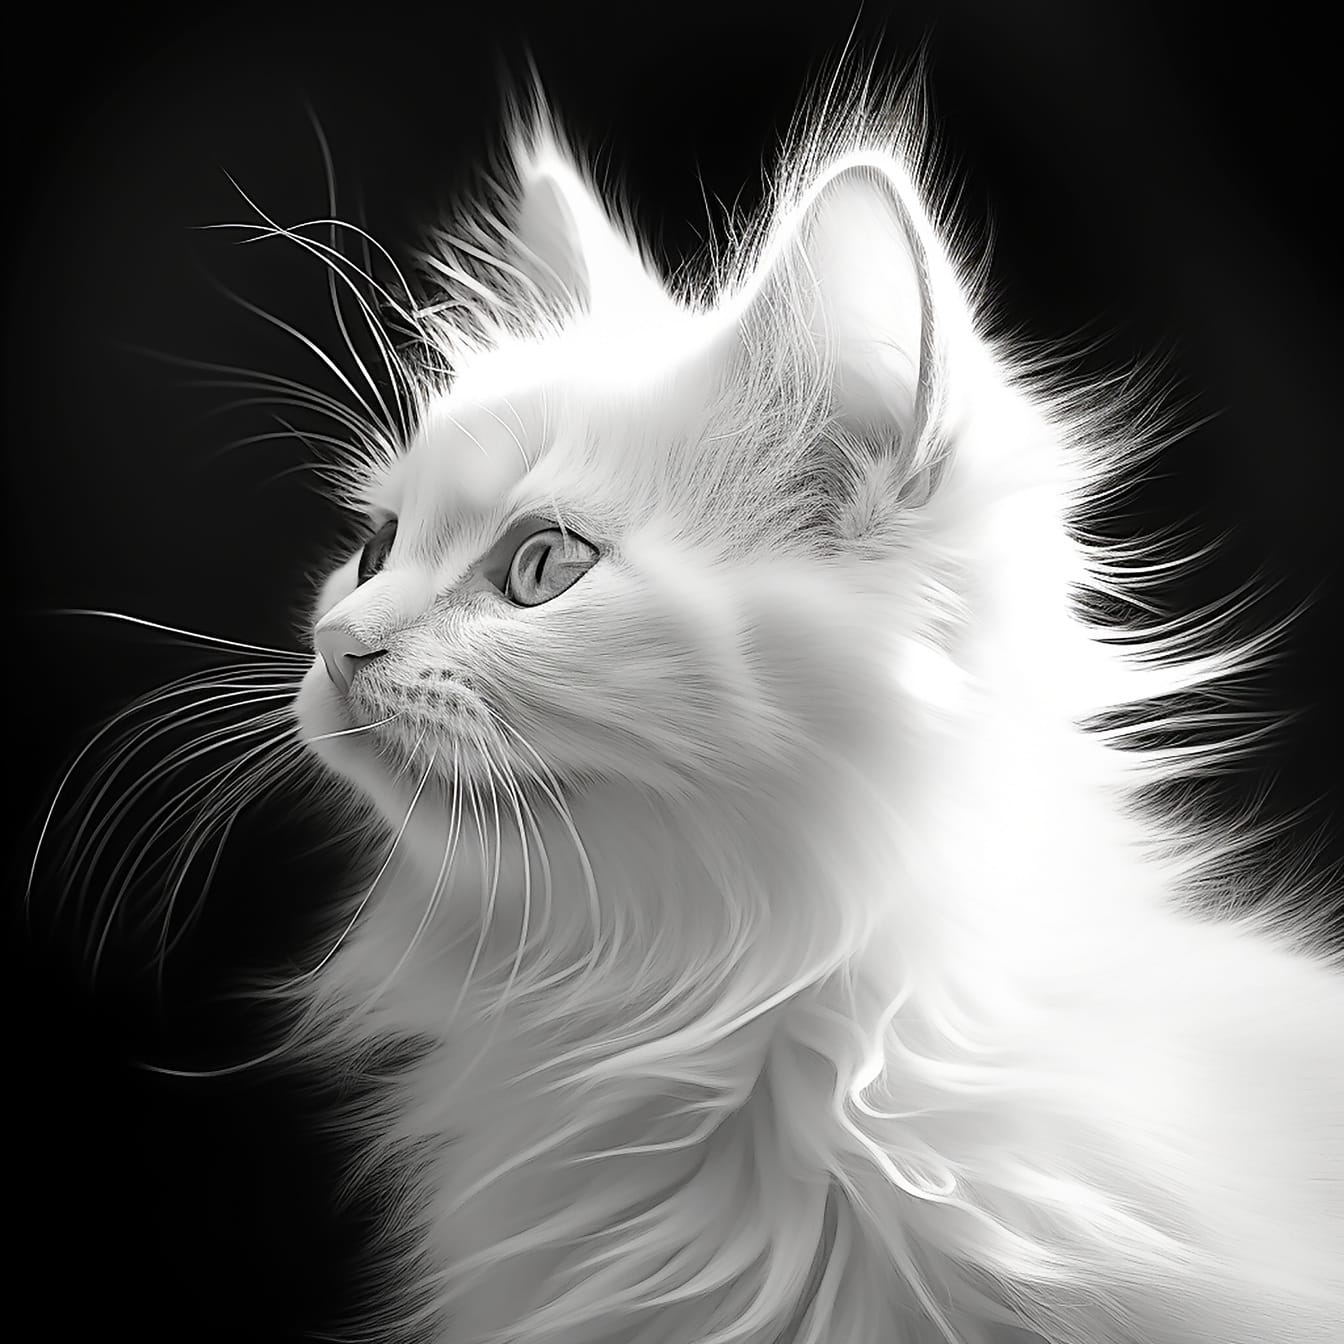 Portrait en noir et blanc de chat domestique à fourrure blanche vue de côté